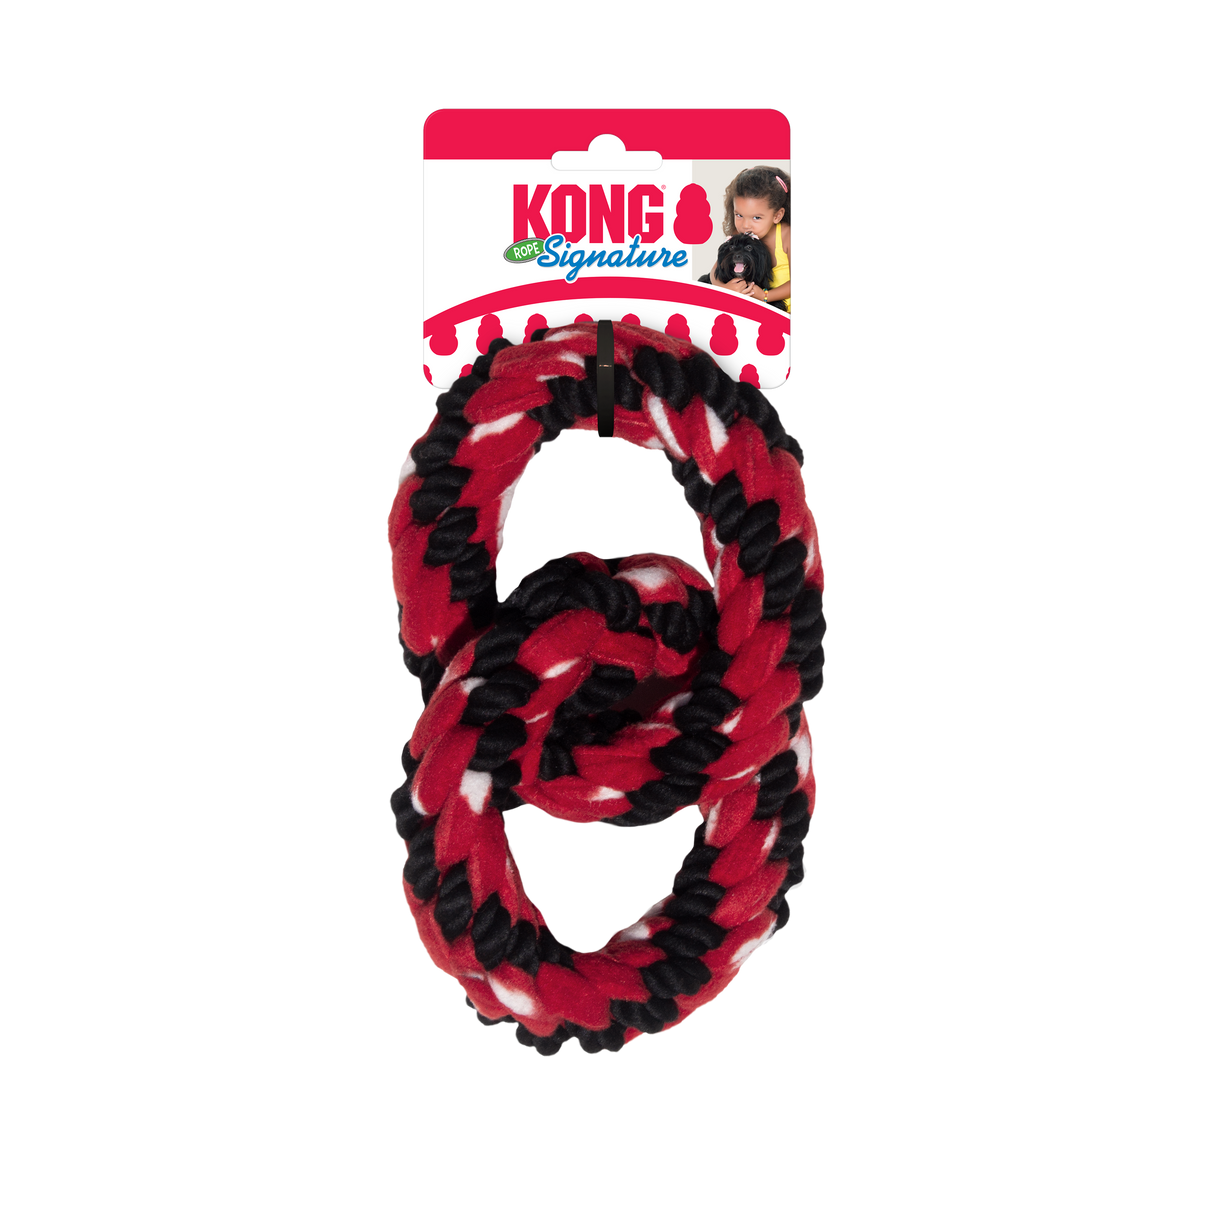 Tug de doble anillo de doble cuerda de Kong Signature